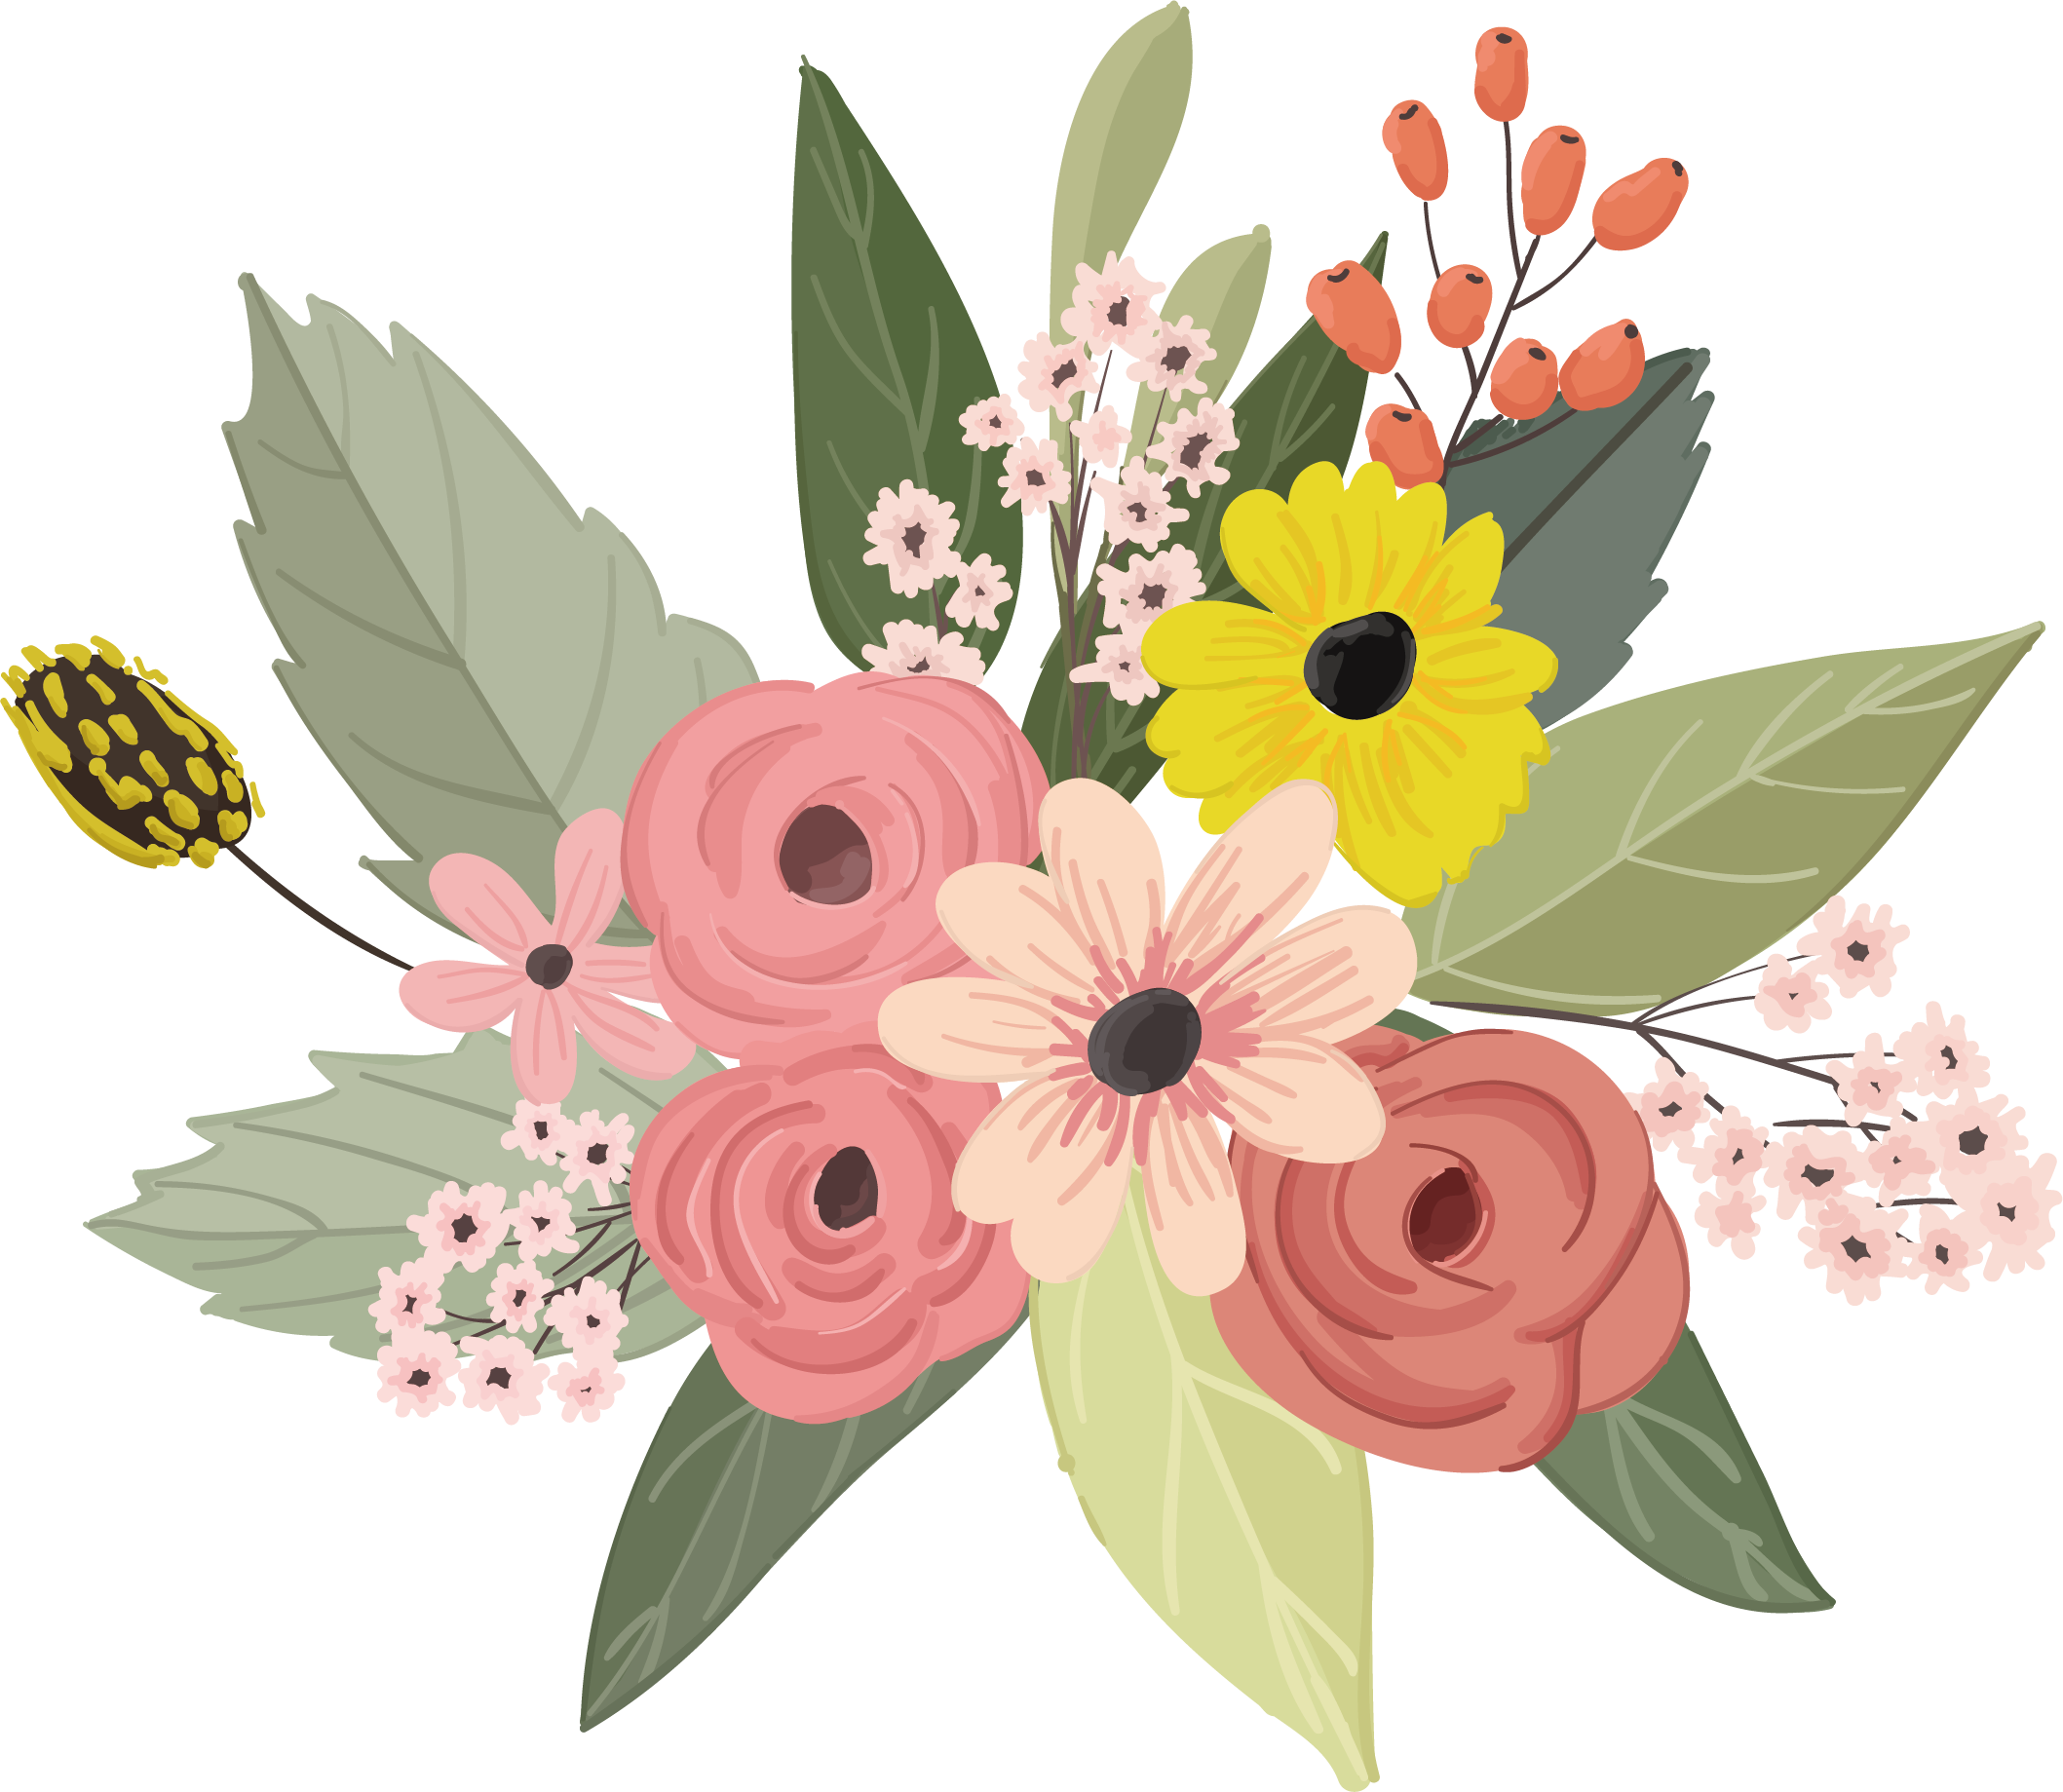 flower illustration vector free download